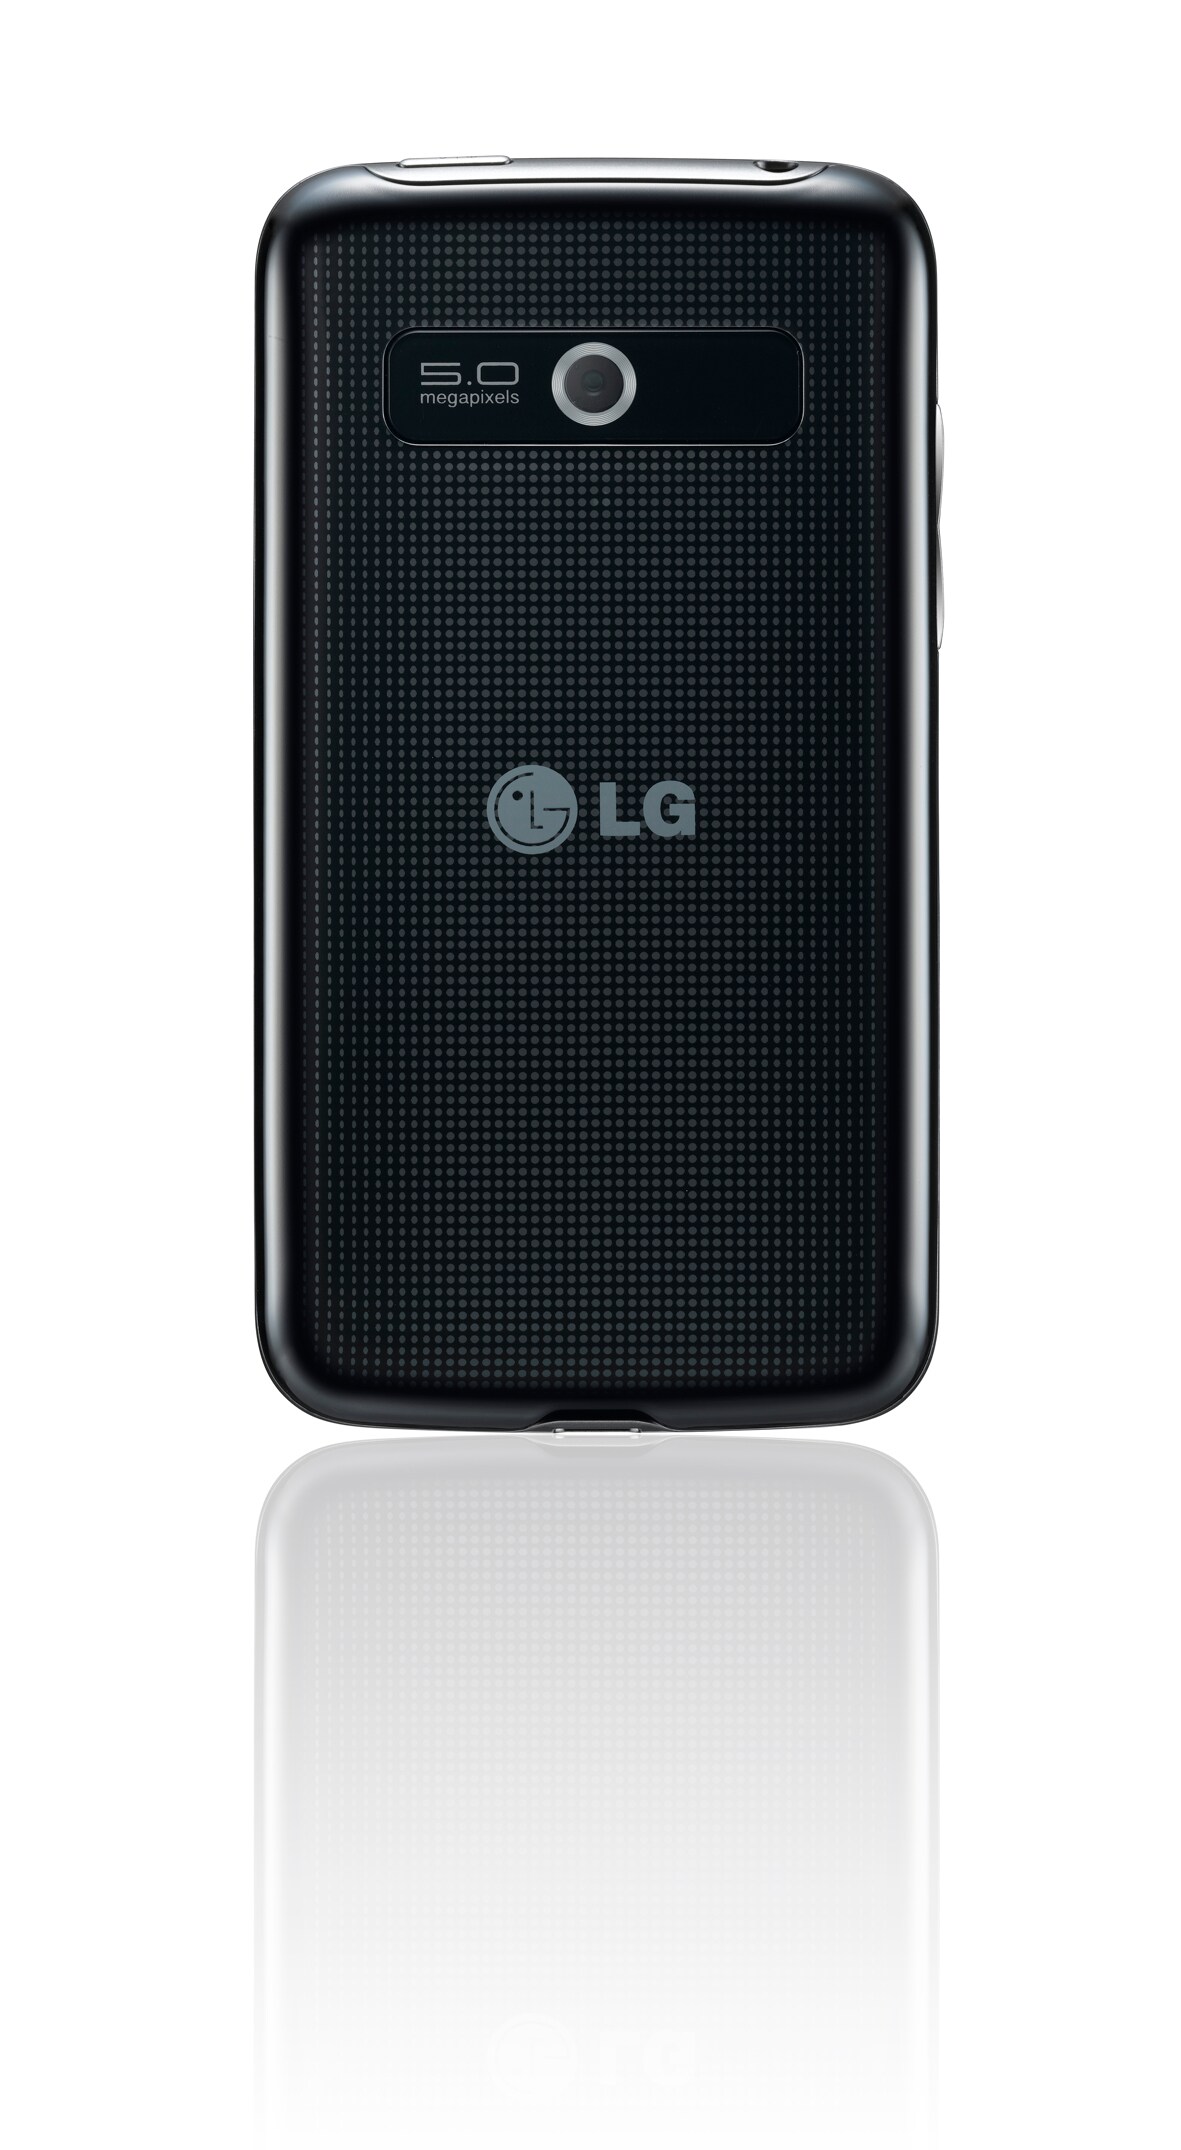 Νέο Optimus Hub από την LG για εύκολη και γρήγορη ανταλλαγή περιεχόμενου